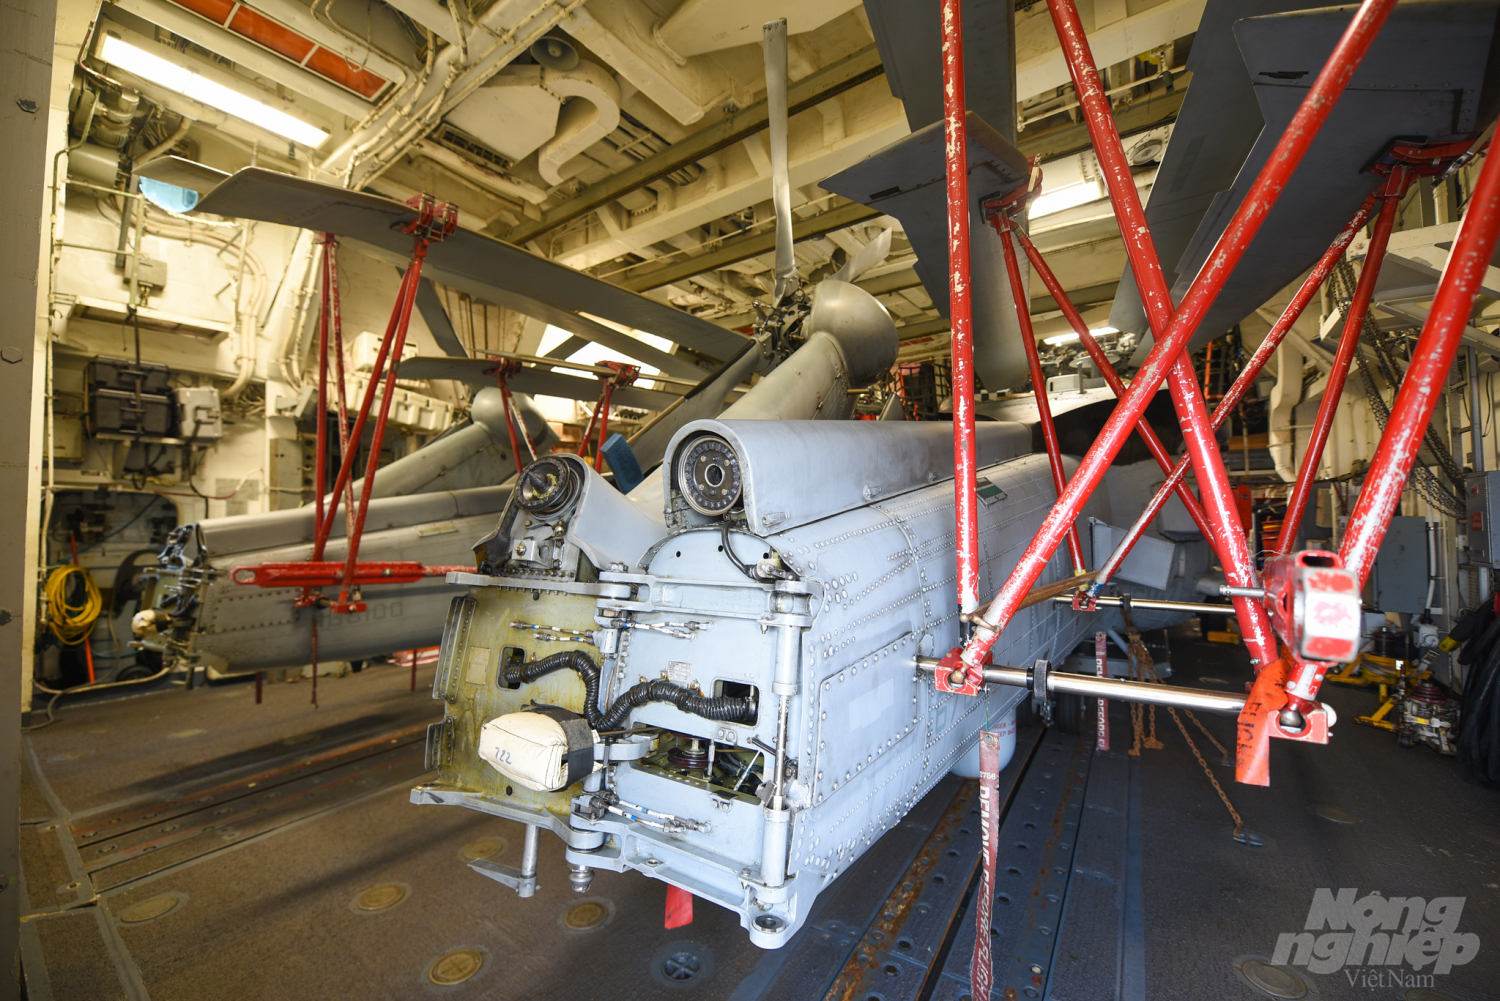 Trong khoang của USS Bunker Hill có 2 trực thăng Sikorsky SH-60 Seahawk. Đây là loại máy bay đa nhiệm, có thể làm nhiệm vụ săn tàu ngầm, săn tàu nổi, cứu hộ cứu nạn hay trung chuyển hàng hóa. Ảnh: Tùng Đinh.